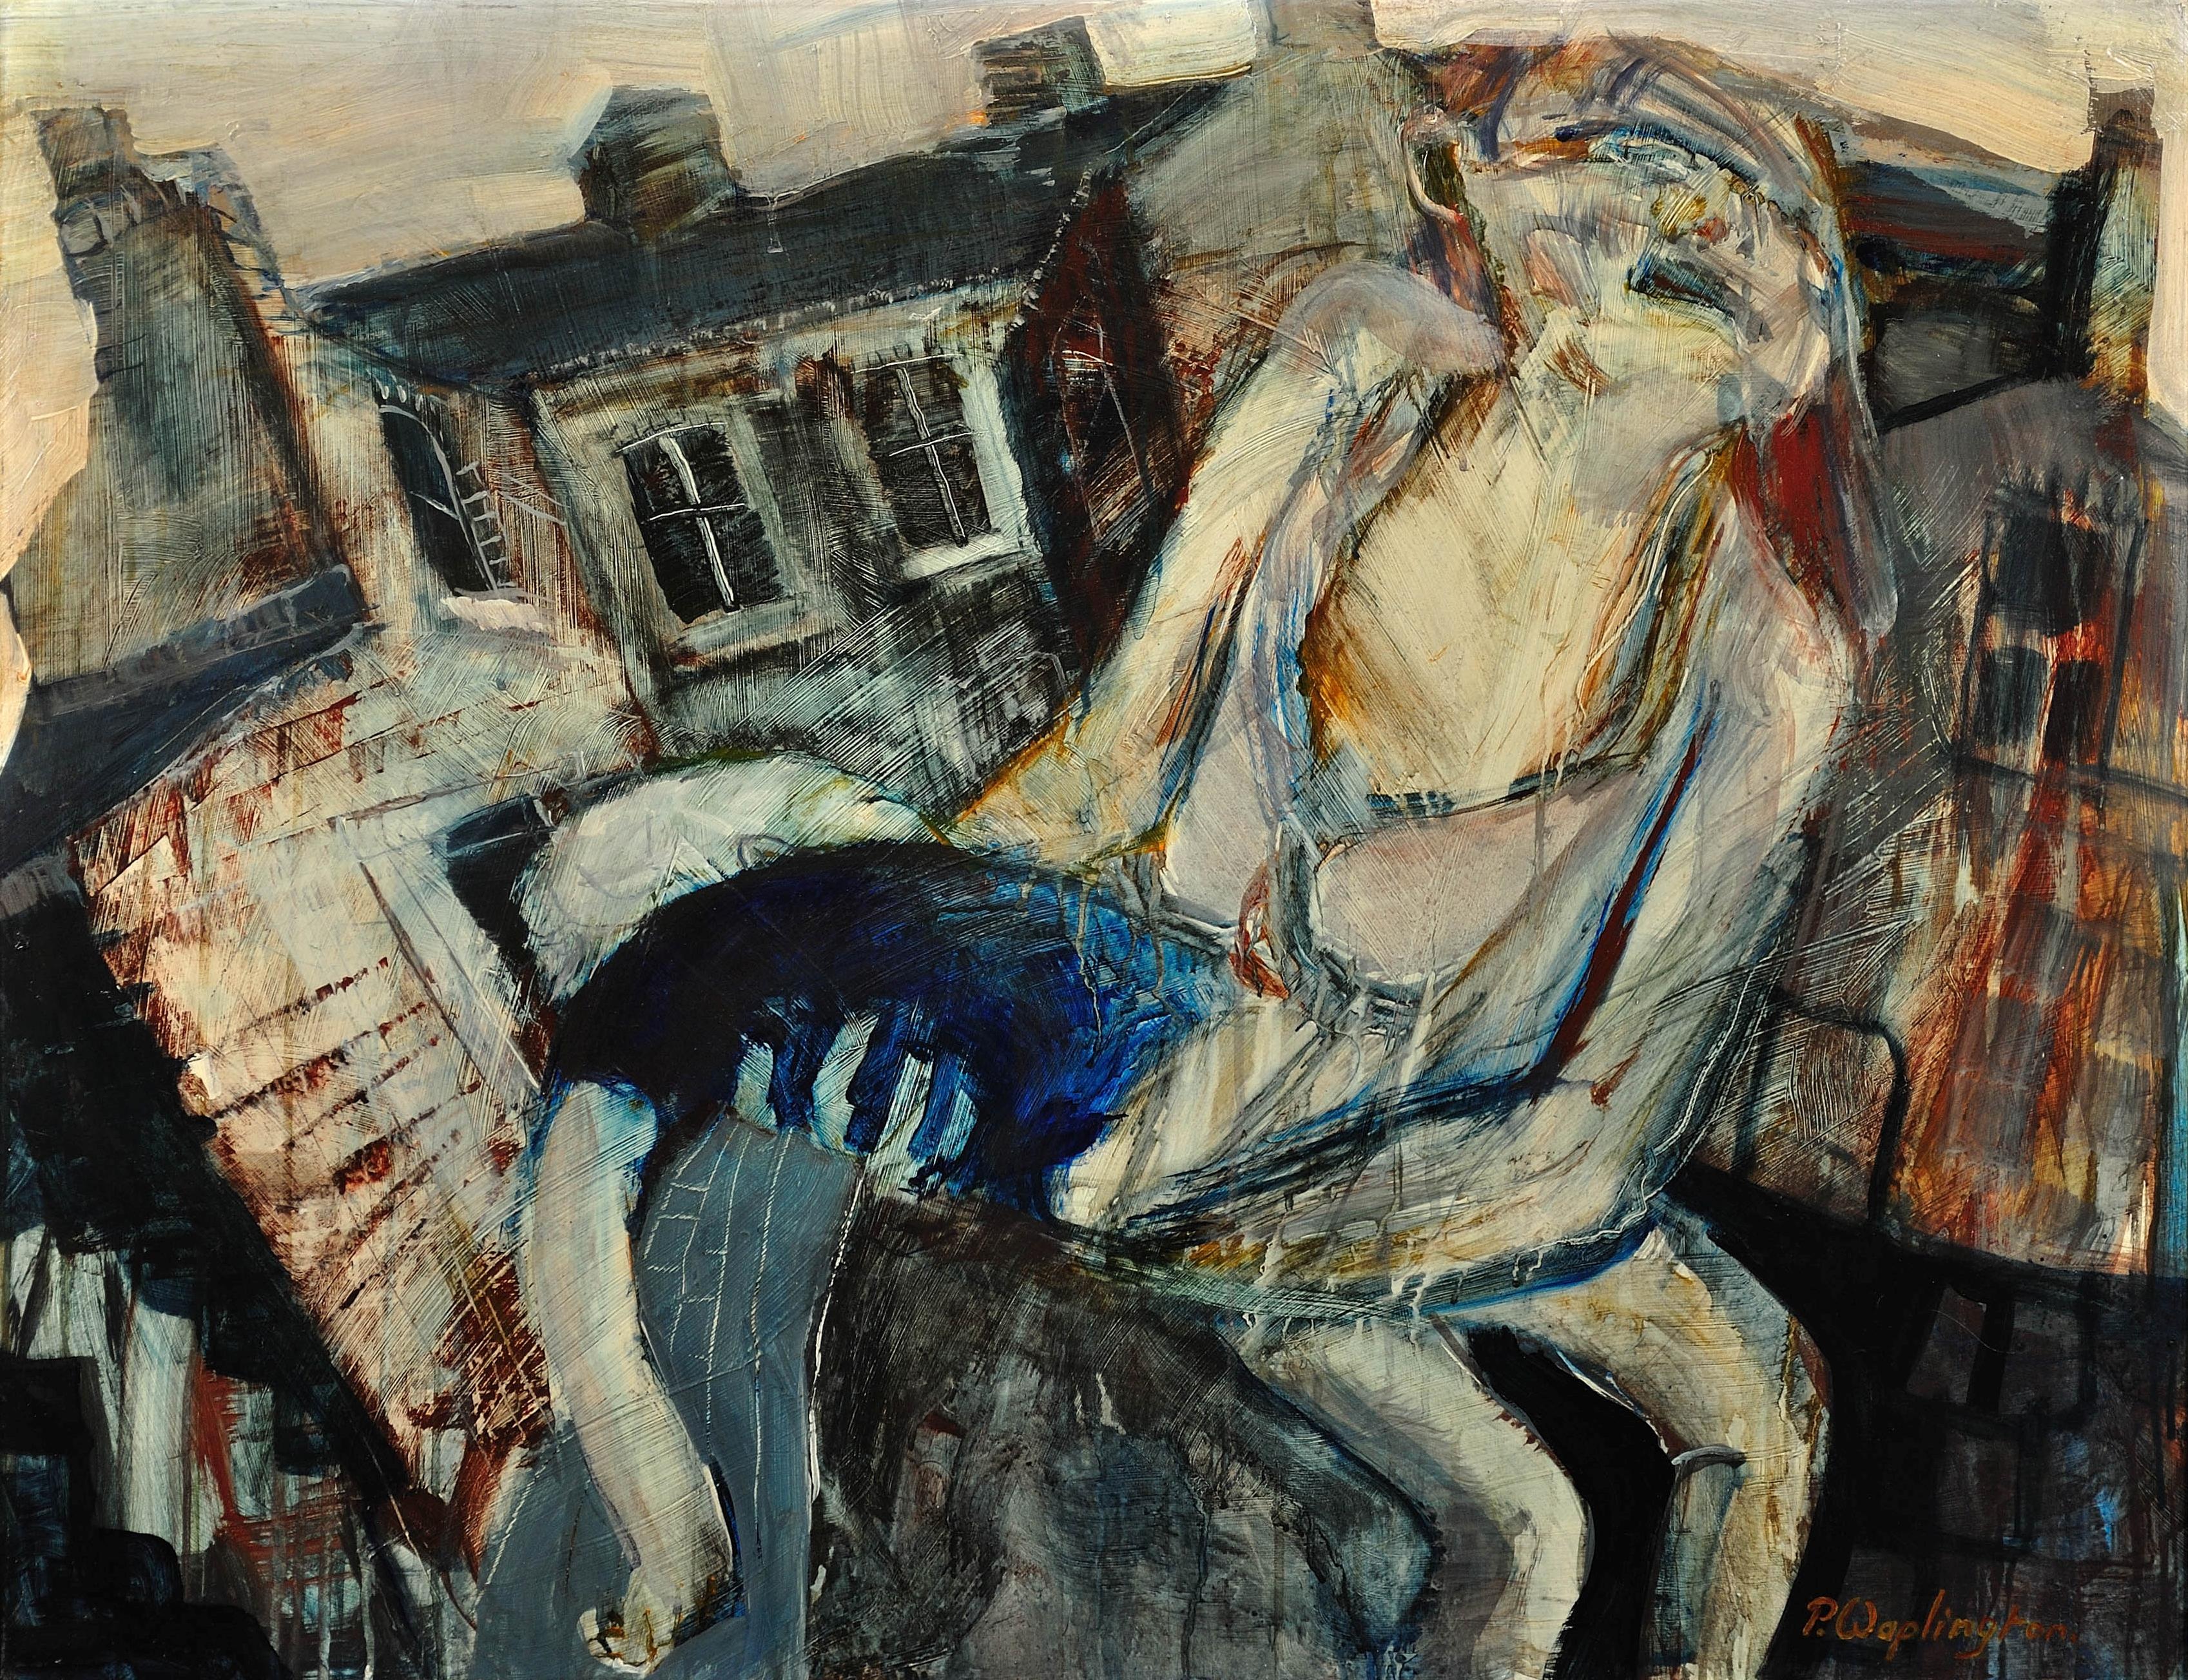 Mutter mit verletztem Kind, Forest Fields, Nottingham. Das wahre Leben. Drama. (Moderne), Mixed Media Art, von Paul Anthony Waplington